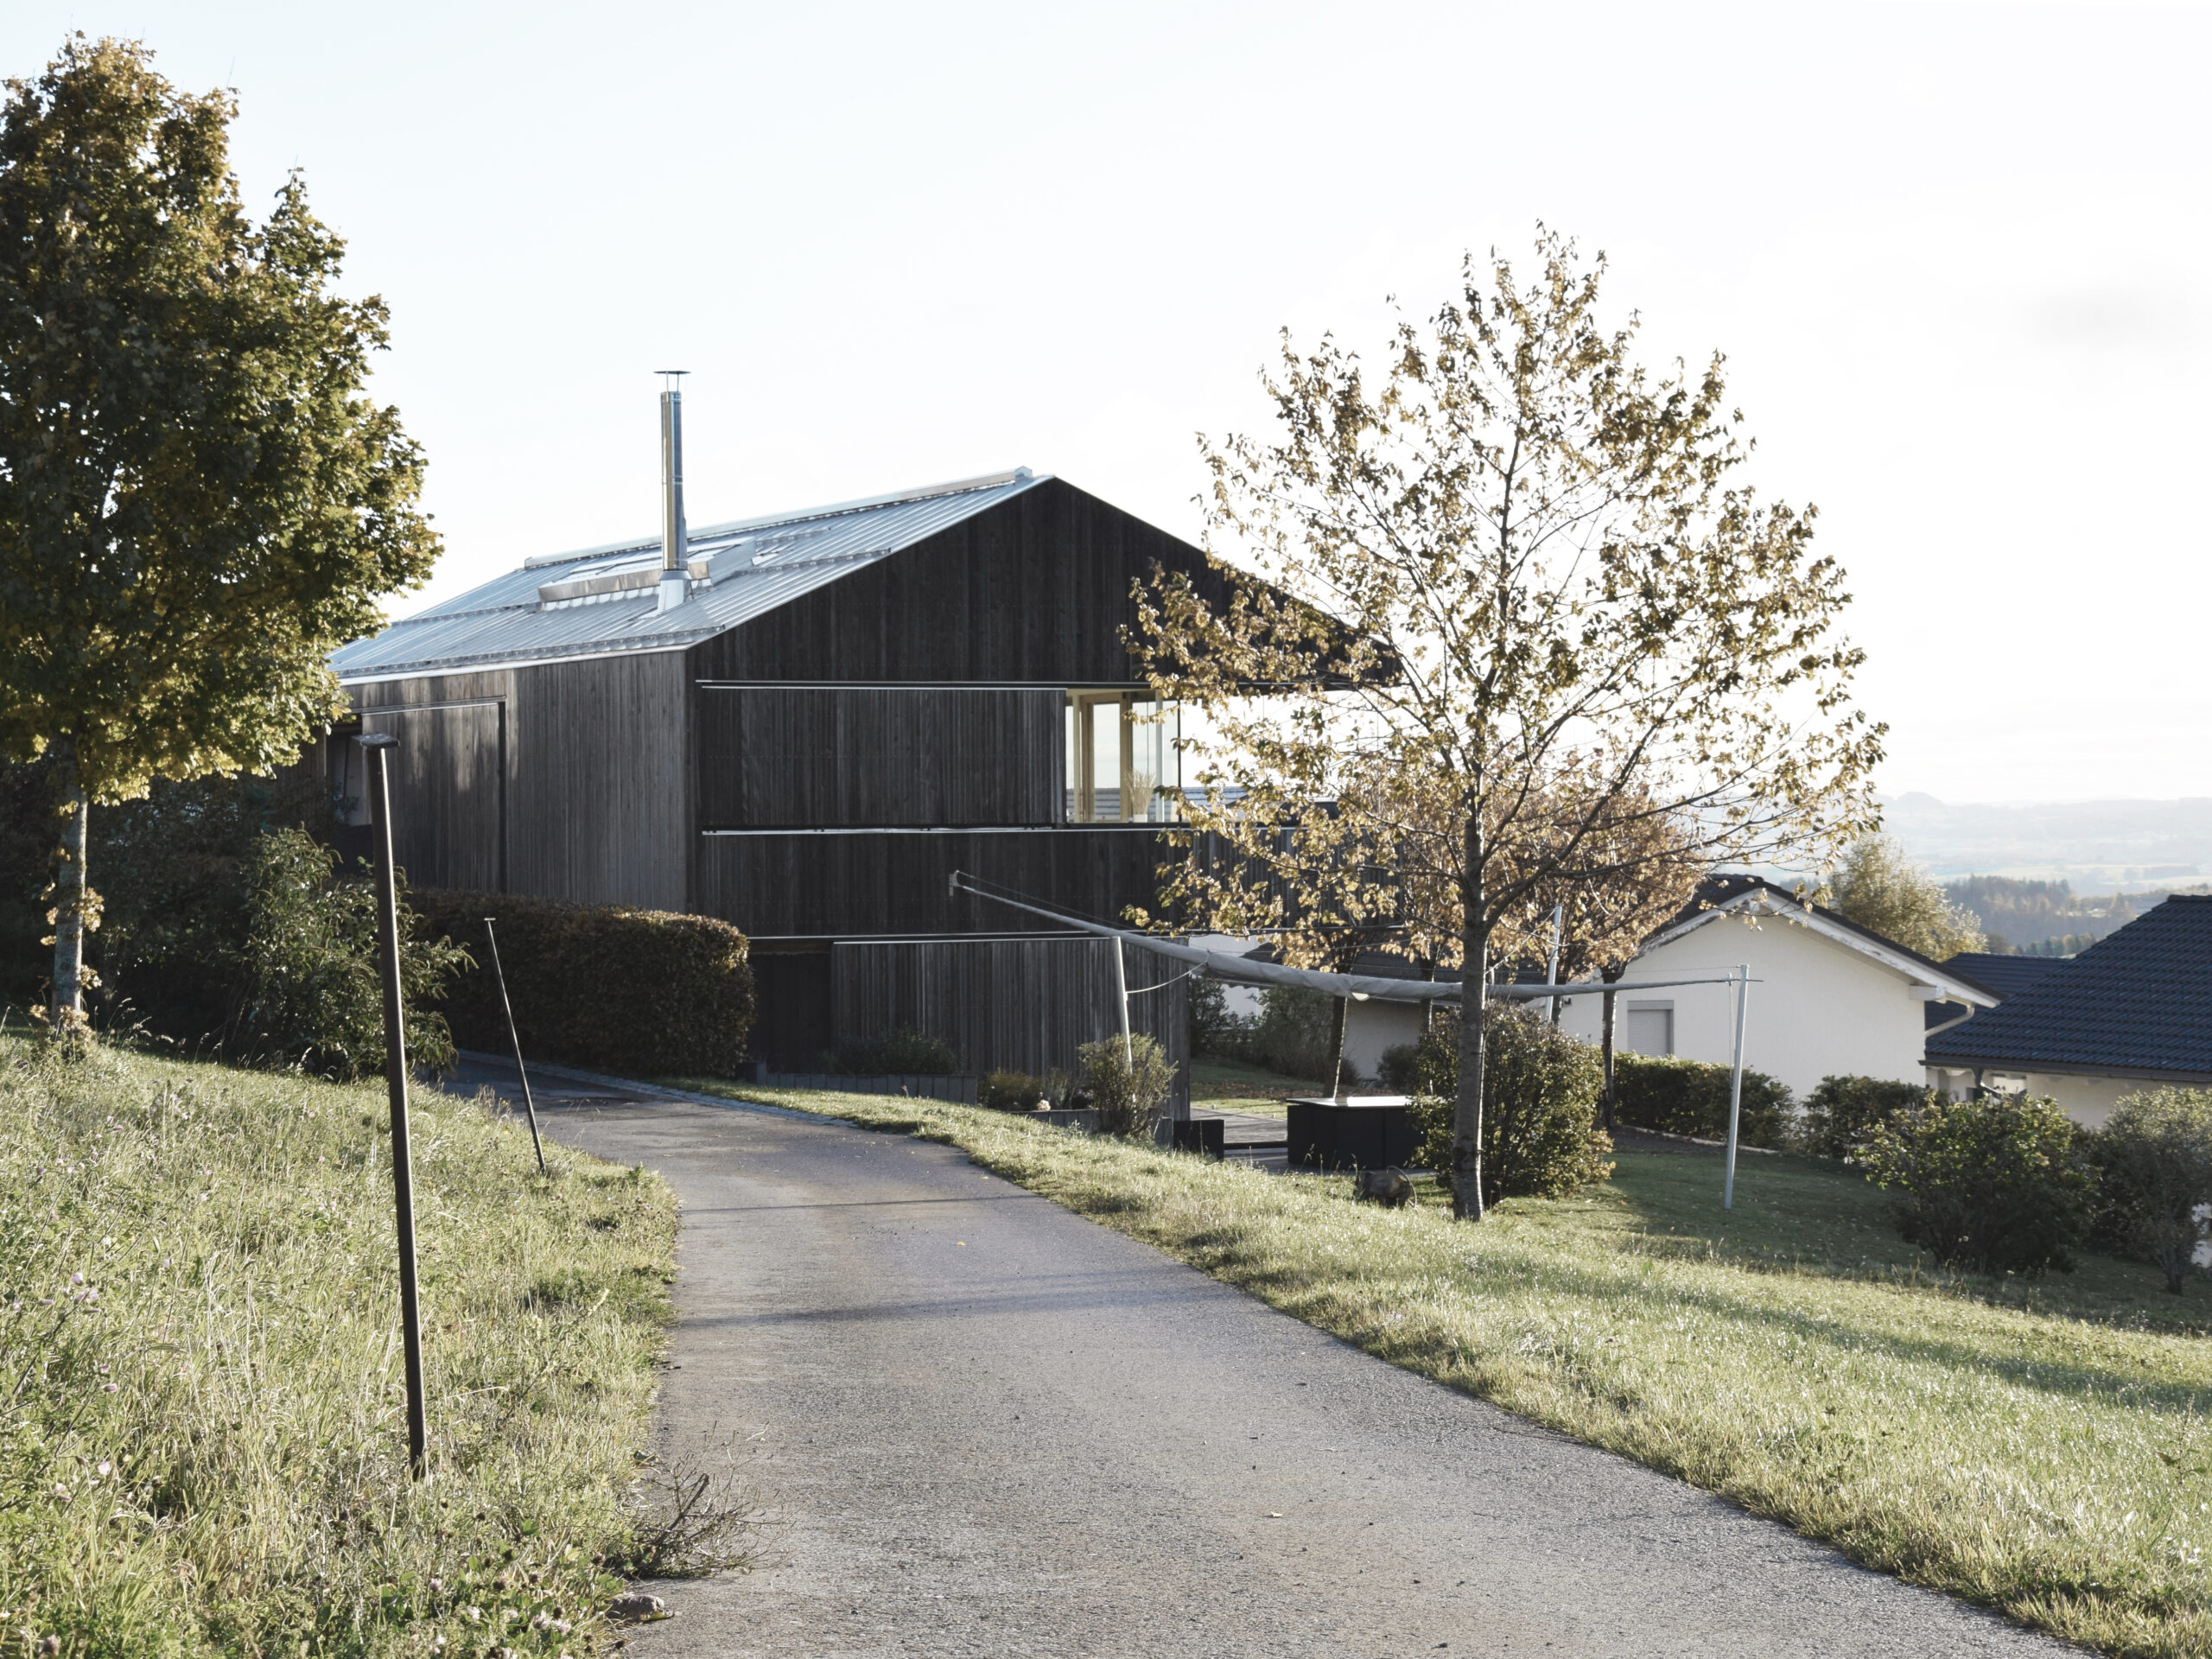 Michael-Becker-Architects-Architekten-Haus-s-04